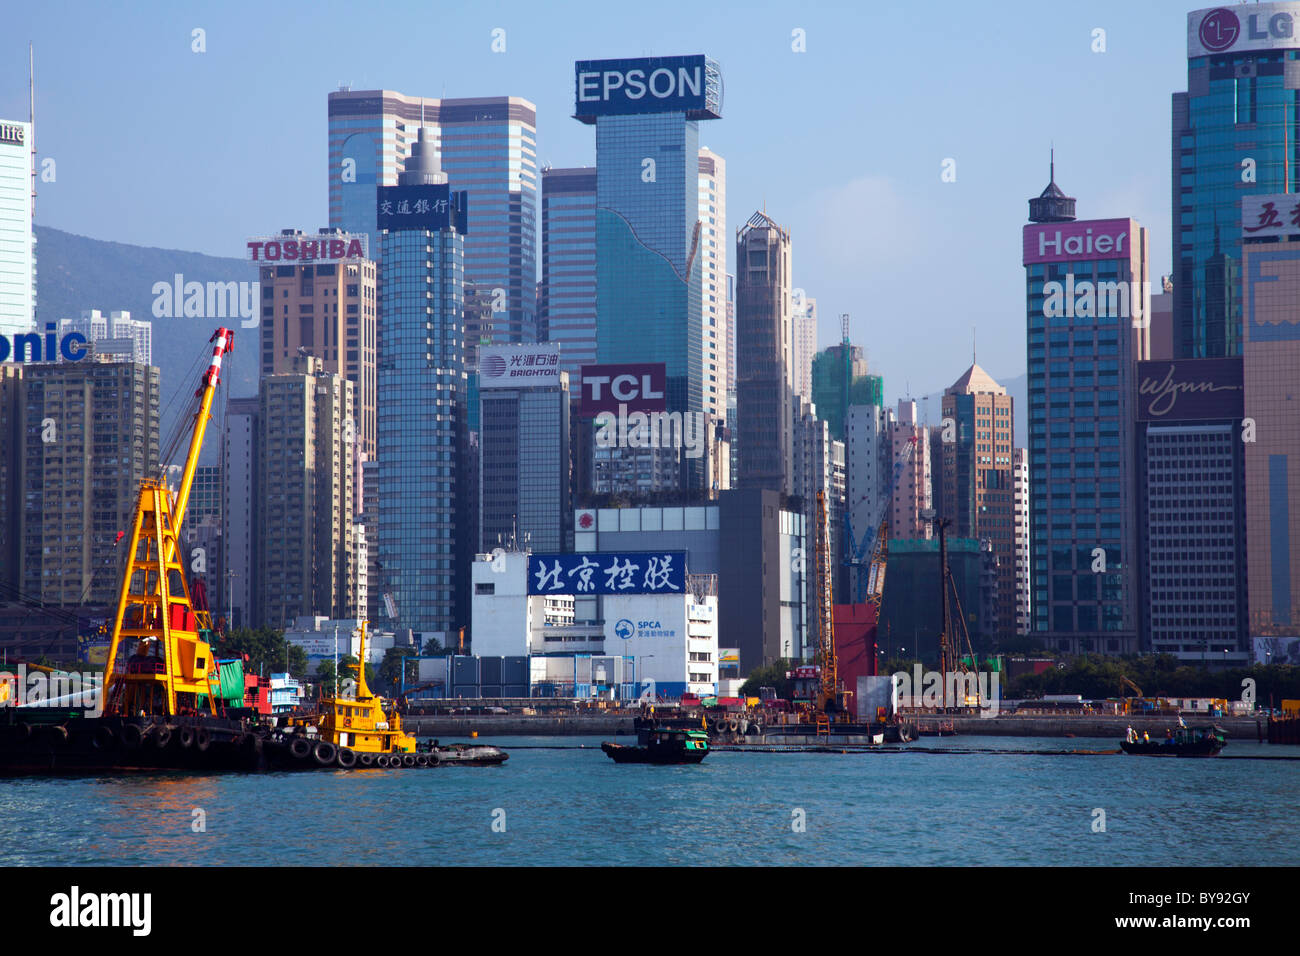 L'horizon de Hong Kong dans la journée montrant géants électrique LG, Toshiba et epson le bâtiment aussi whynn Banque D'Images